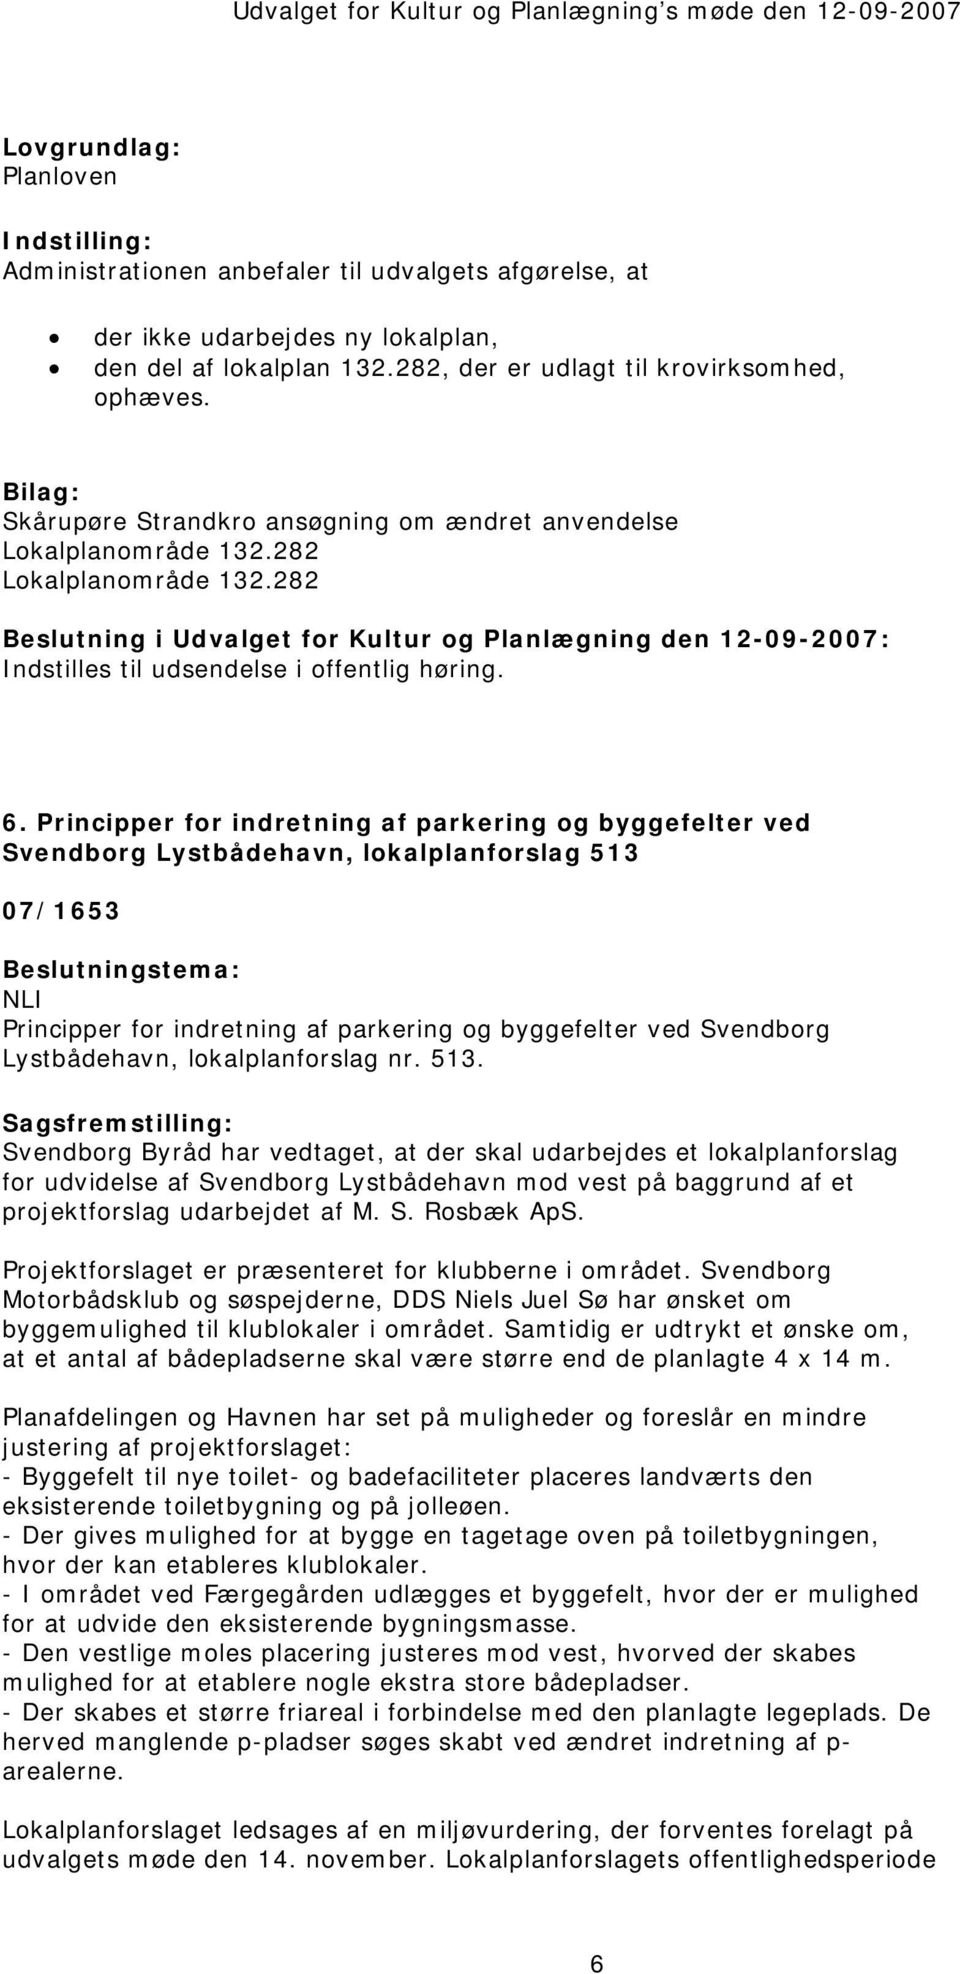 Principper for indretning af parkering og byggefelter ved Svendborg Lystbådehavn, lokalplanforslag 513 07/1653 NLI Principper for indretning af parkering og byggefelter ved Svendborg Lystbådehavn,